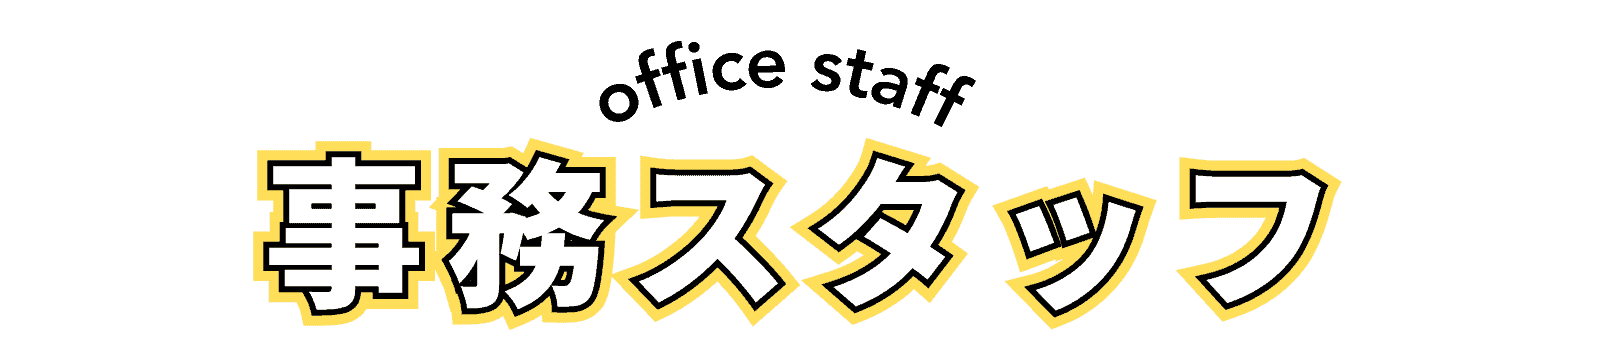 富士環境の内勤事務をを担当している事務スタッフ